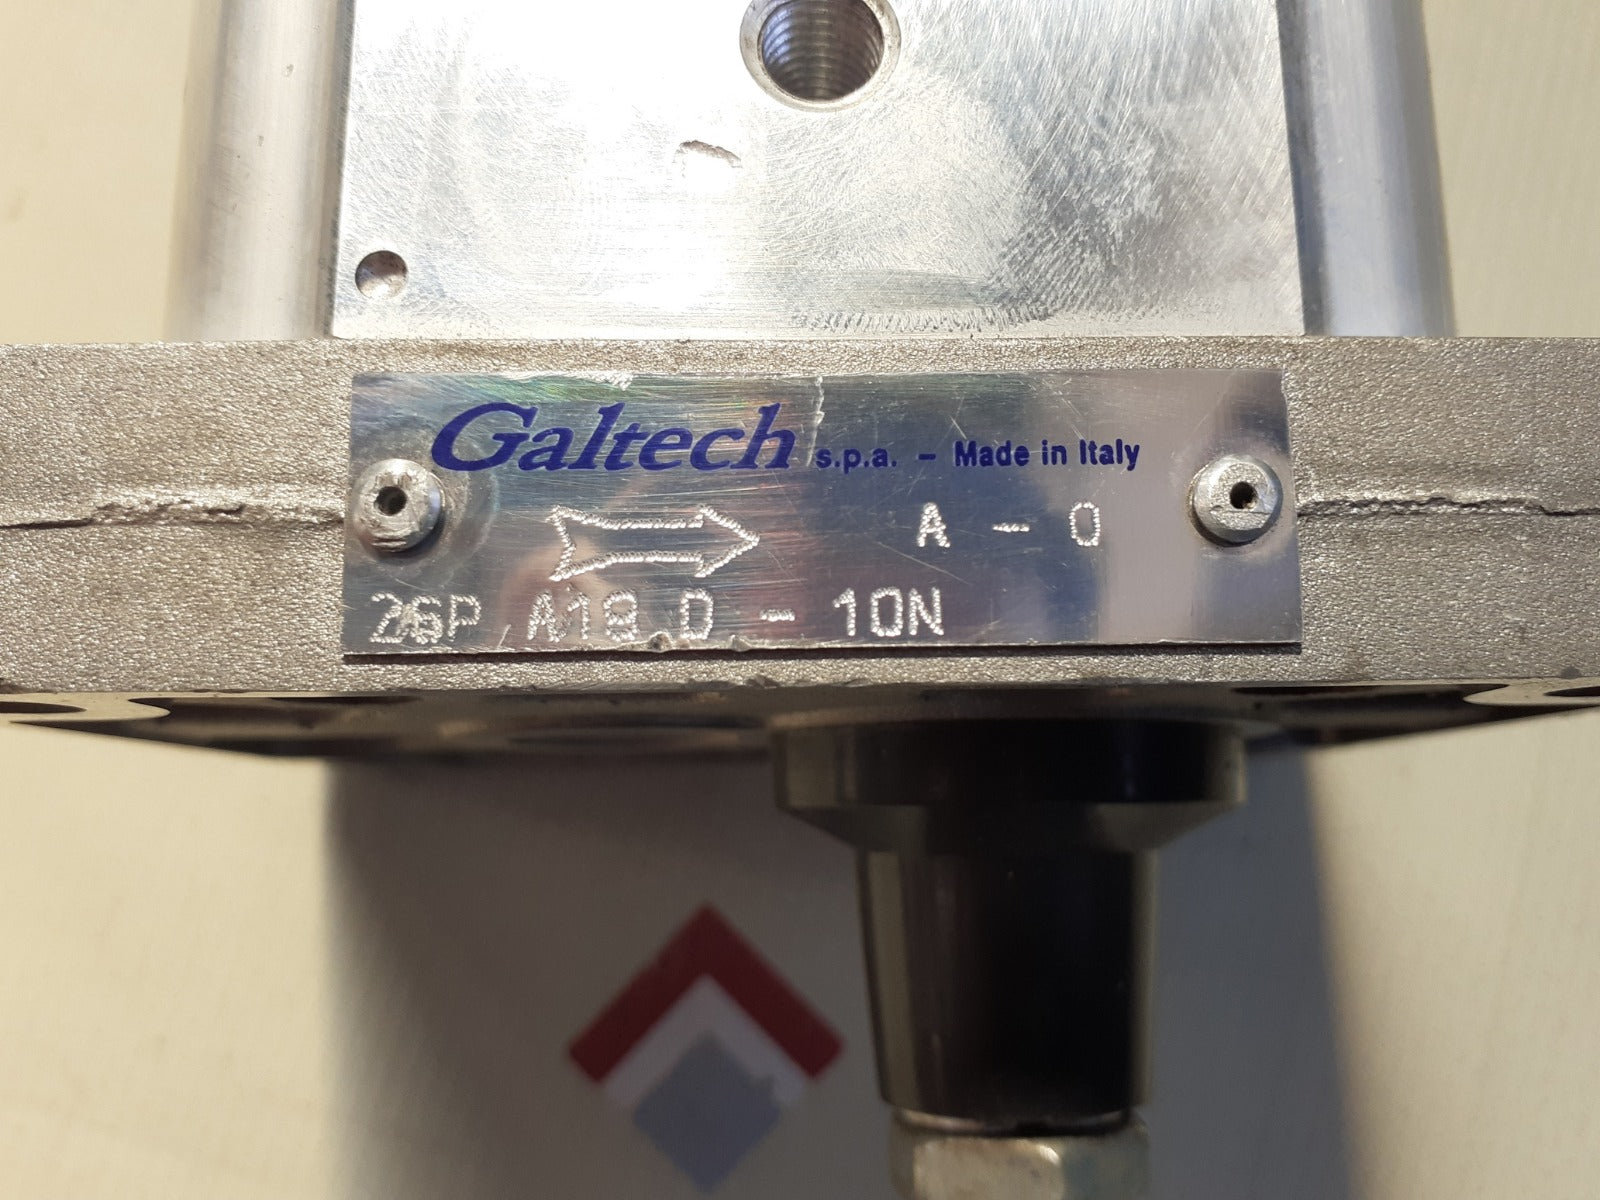 Galtech 25p a19d-10n gear pump